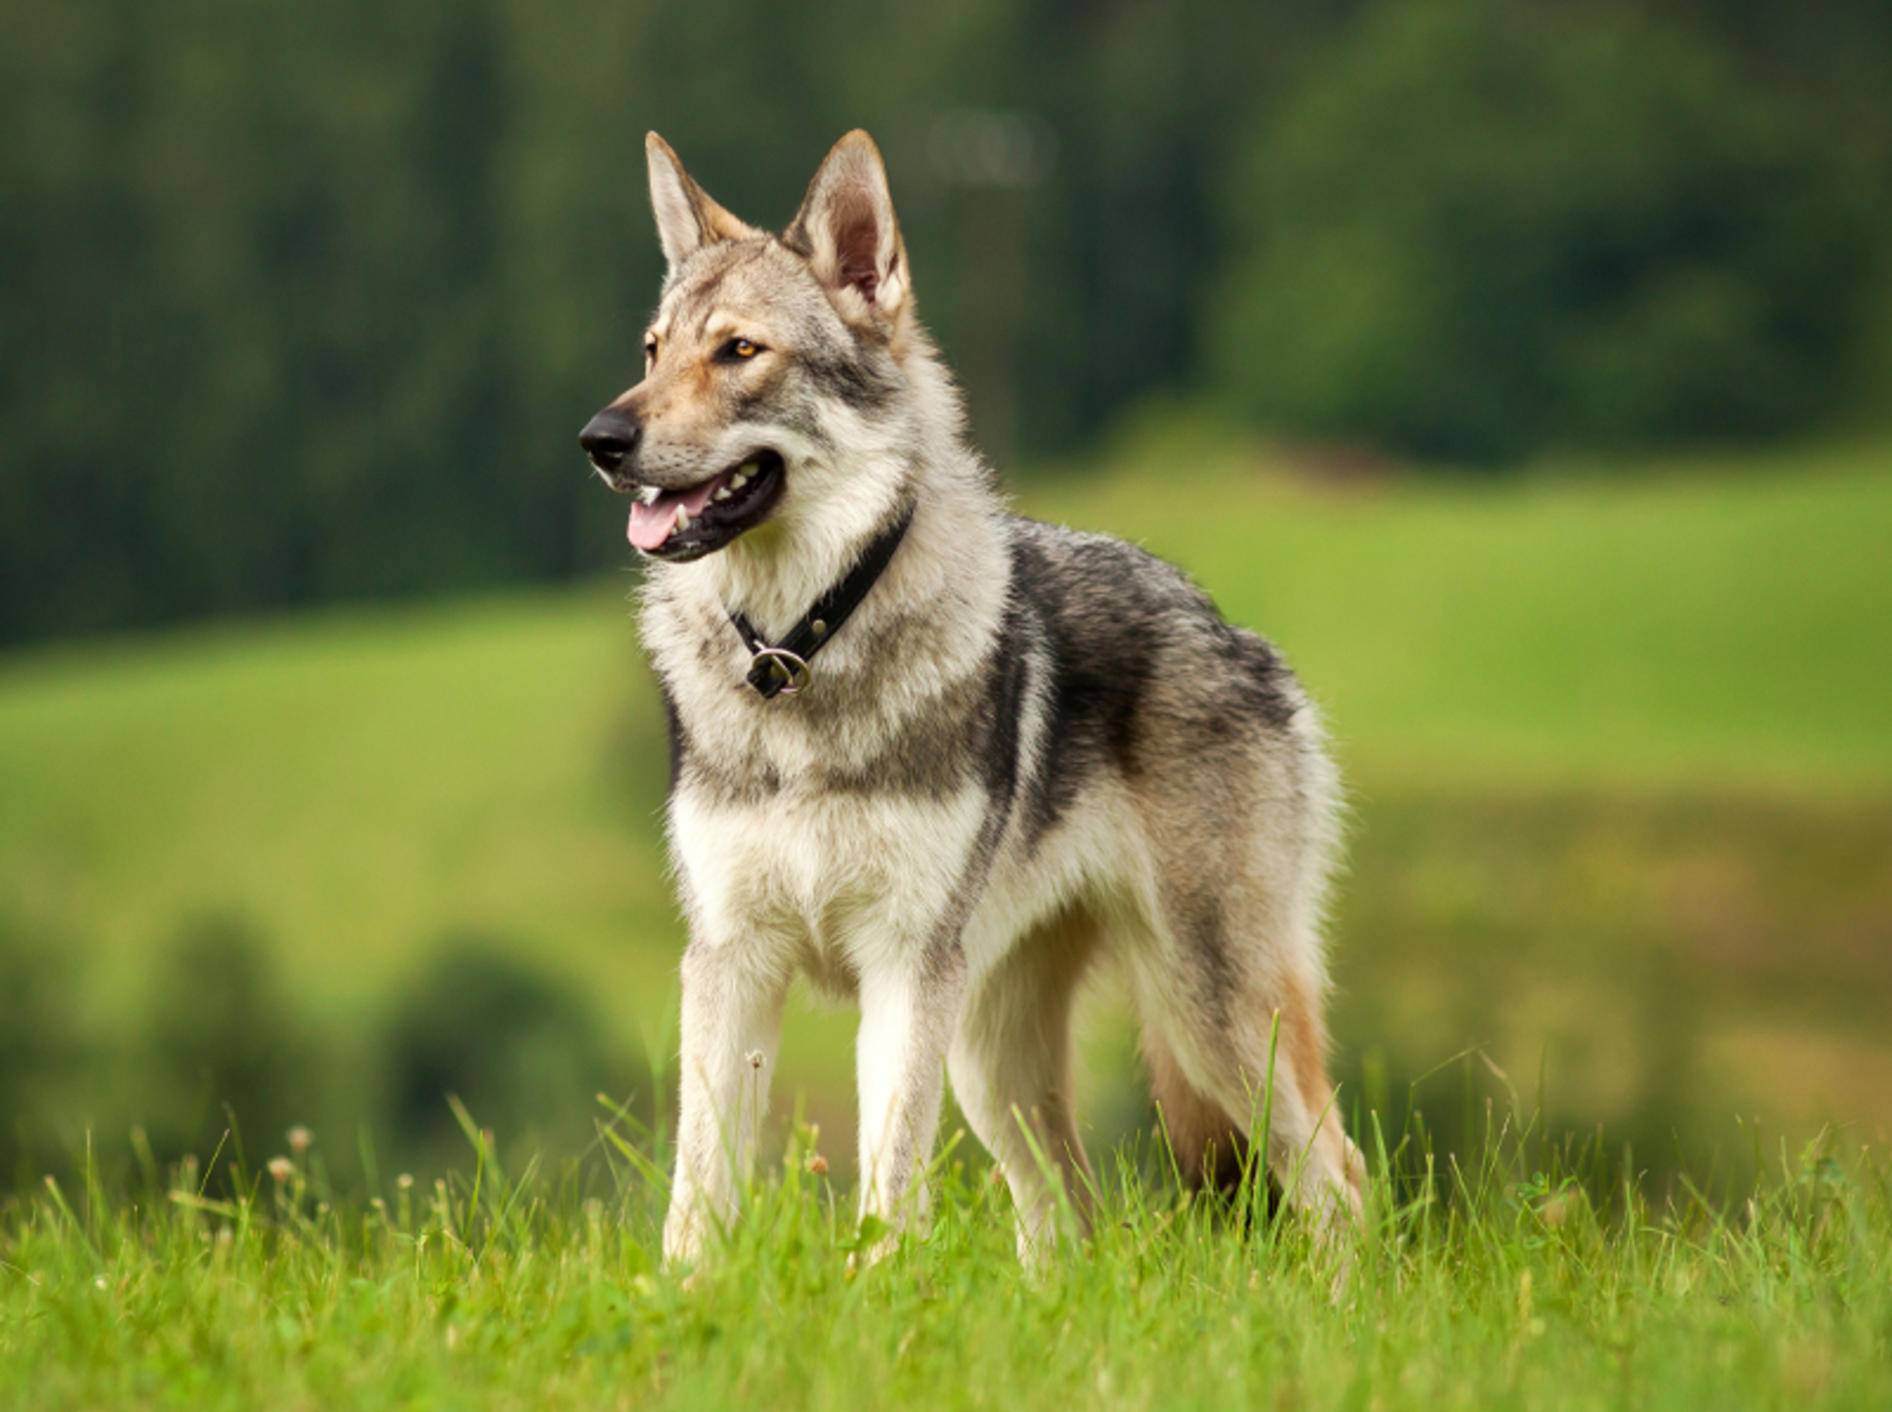 Der wunderbare Tschechoslowakische Wolfshund hat eine ganz besondere, natürliche Ausstrahlung – Shutterstock / gloverk